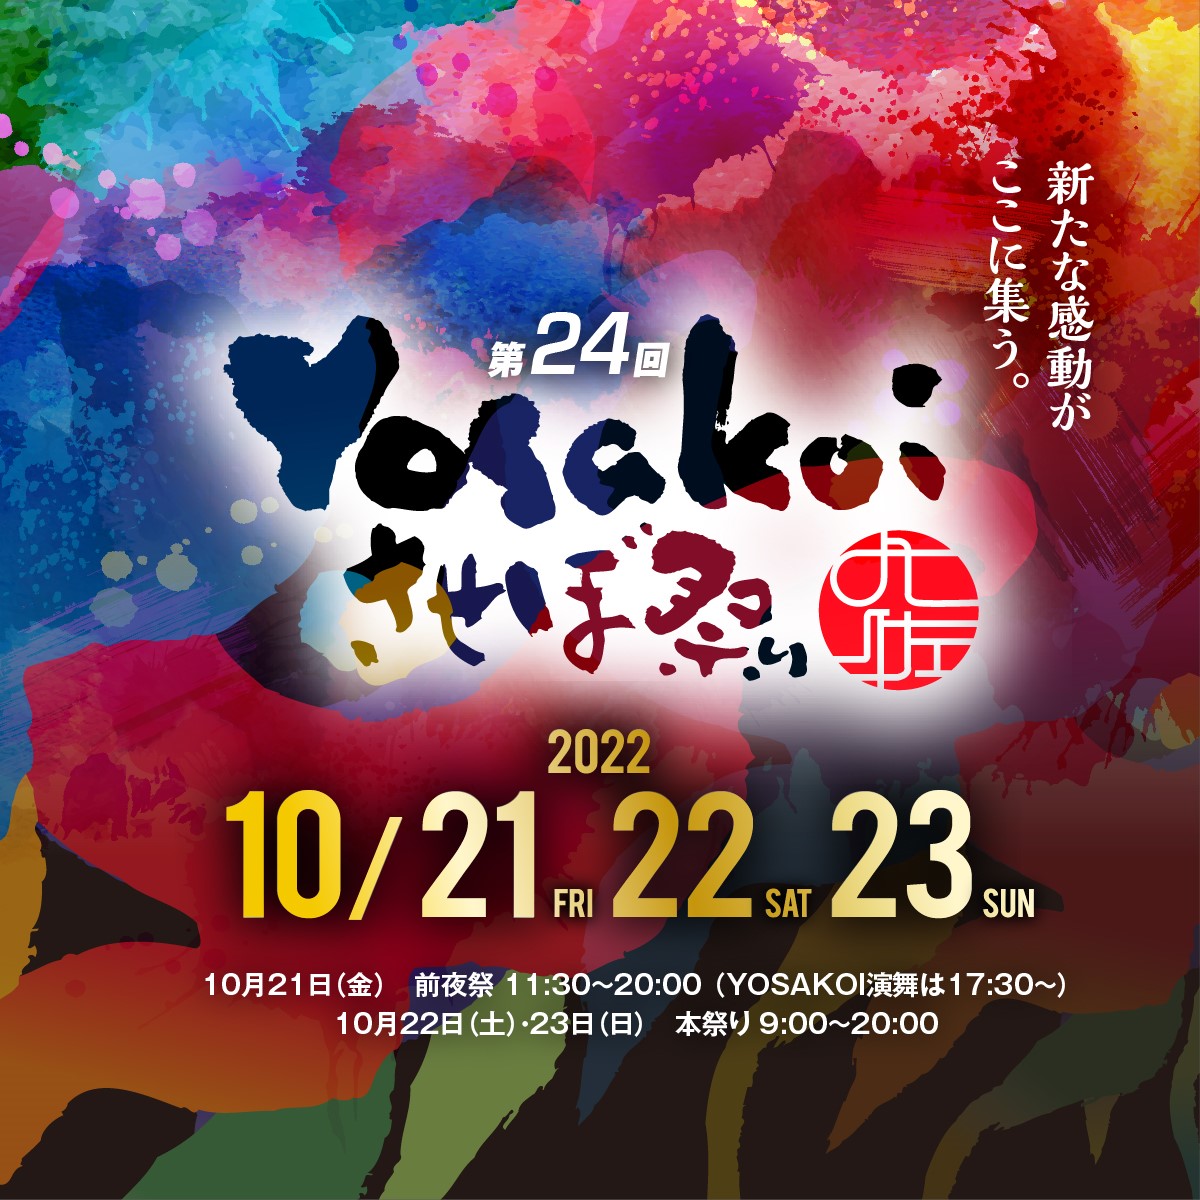 YOSAKOIさせぼ祭り2022-開催概要